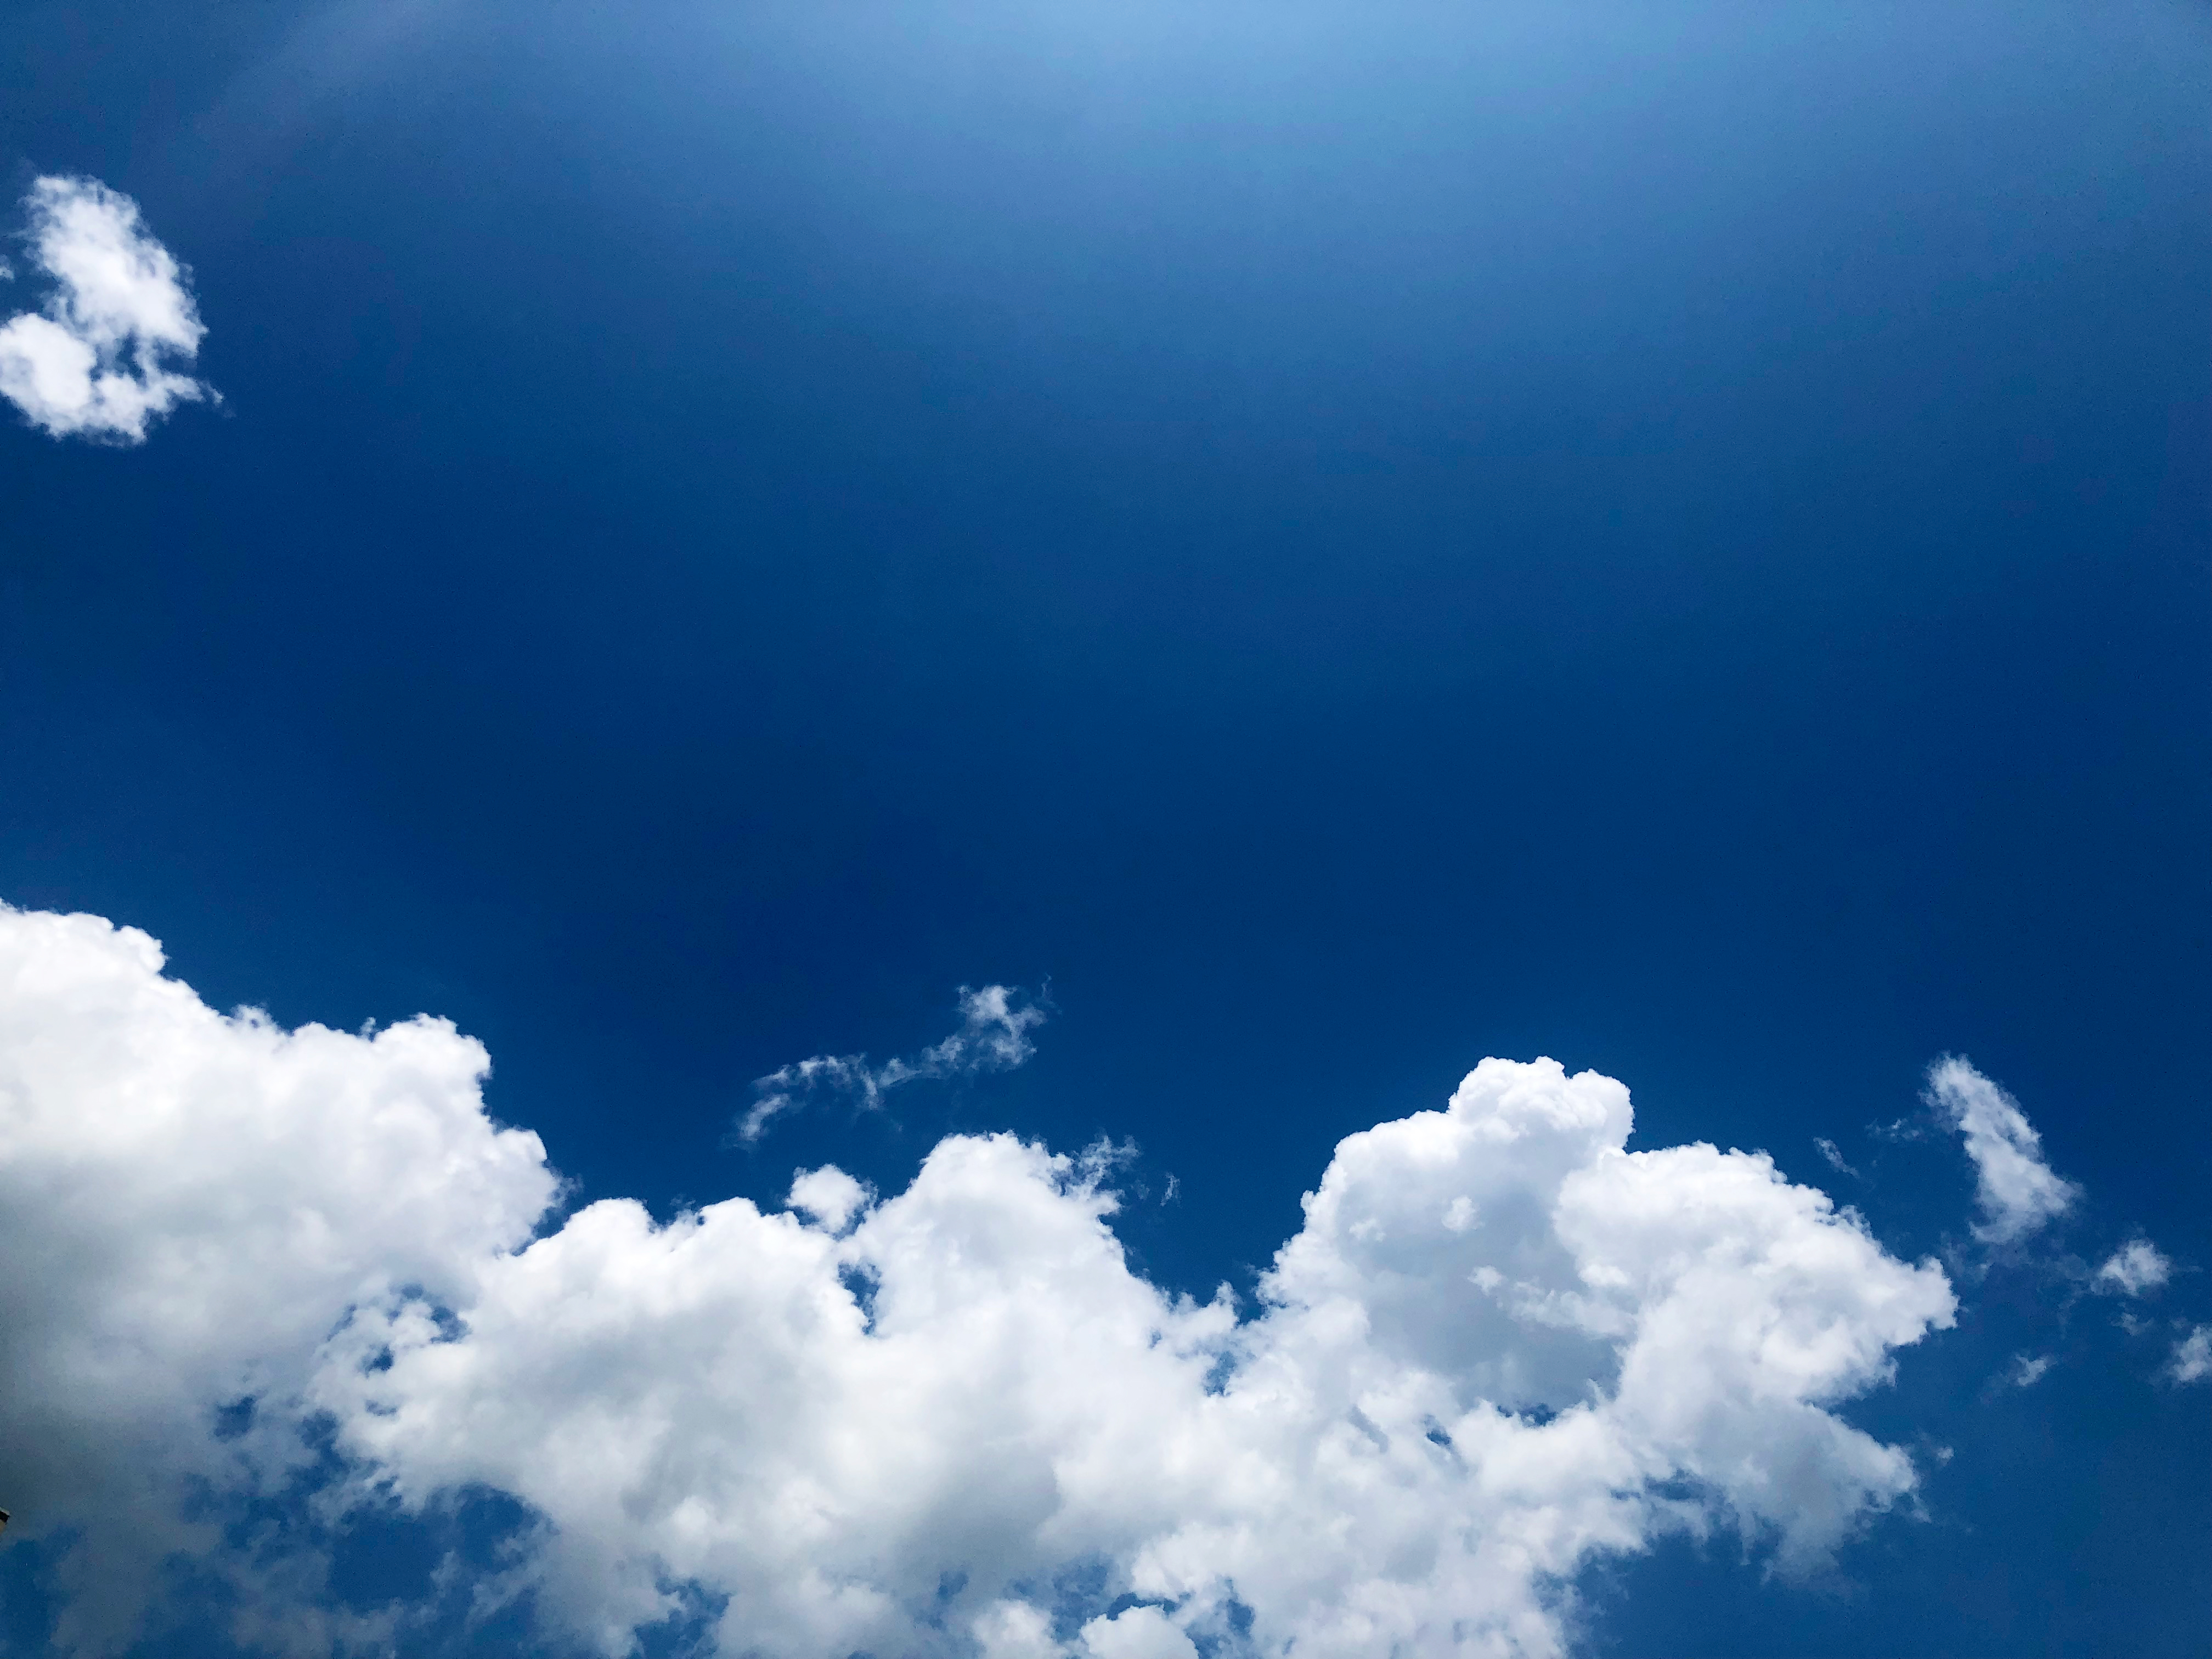 雲と空 3 無料写真 フリー素材のダウンロードサイト もある